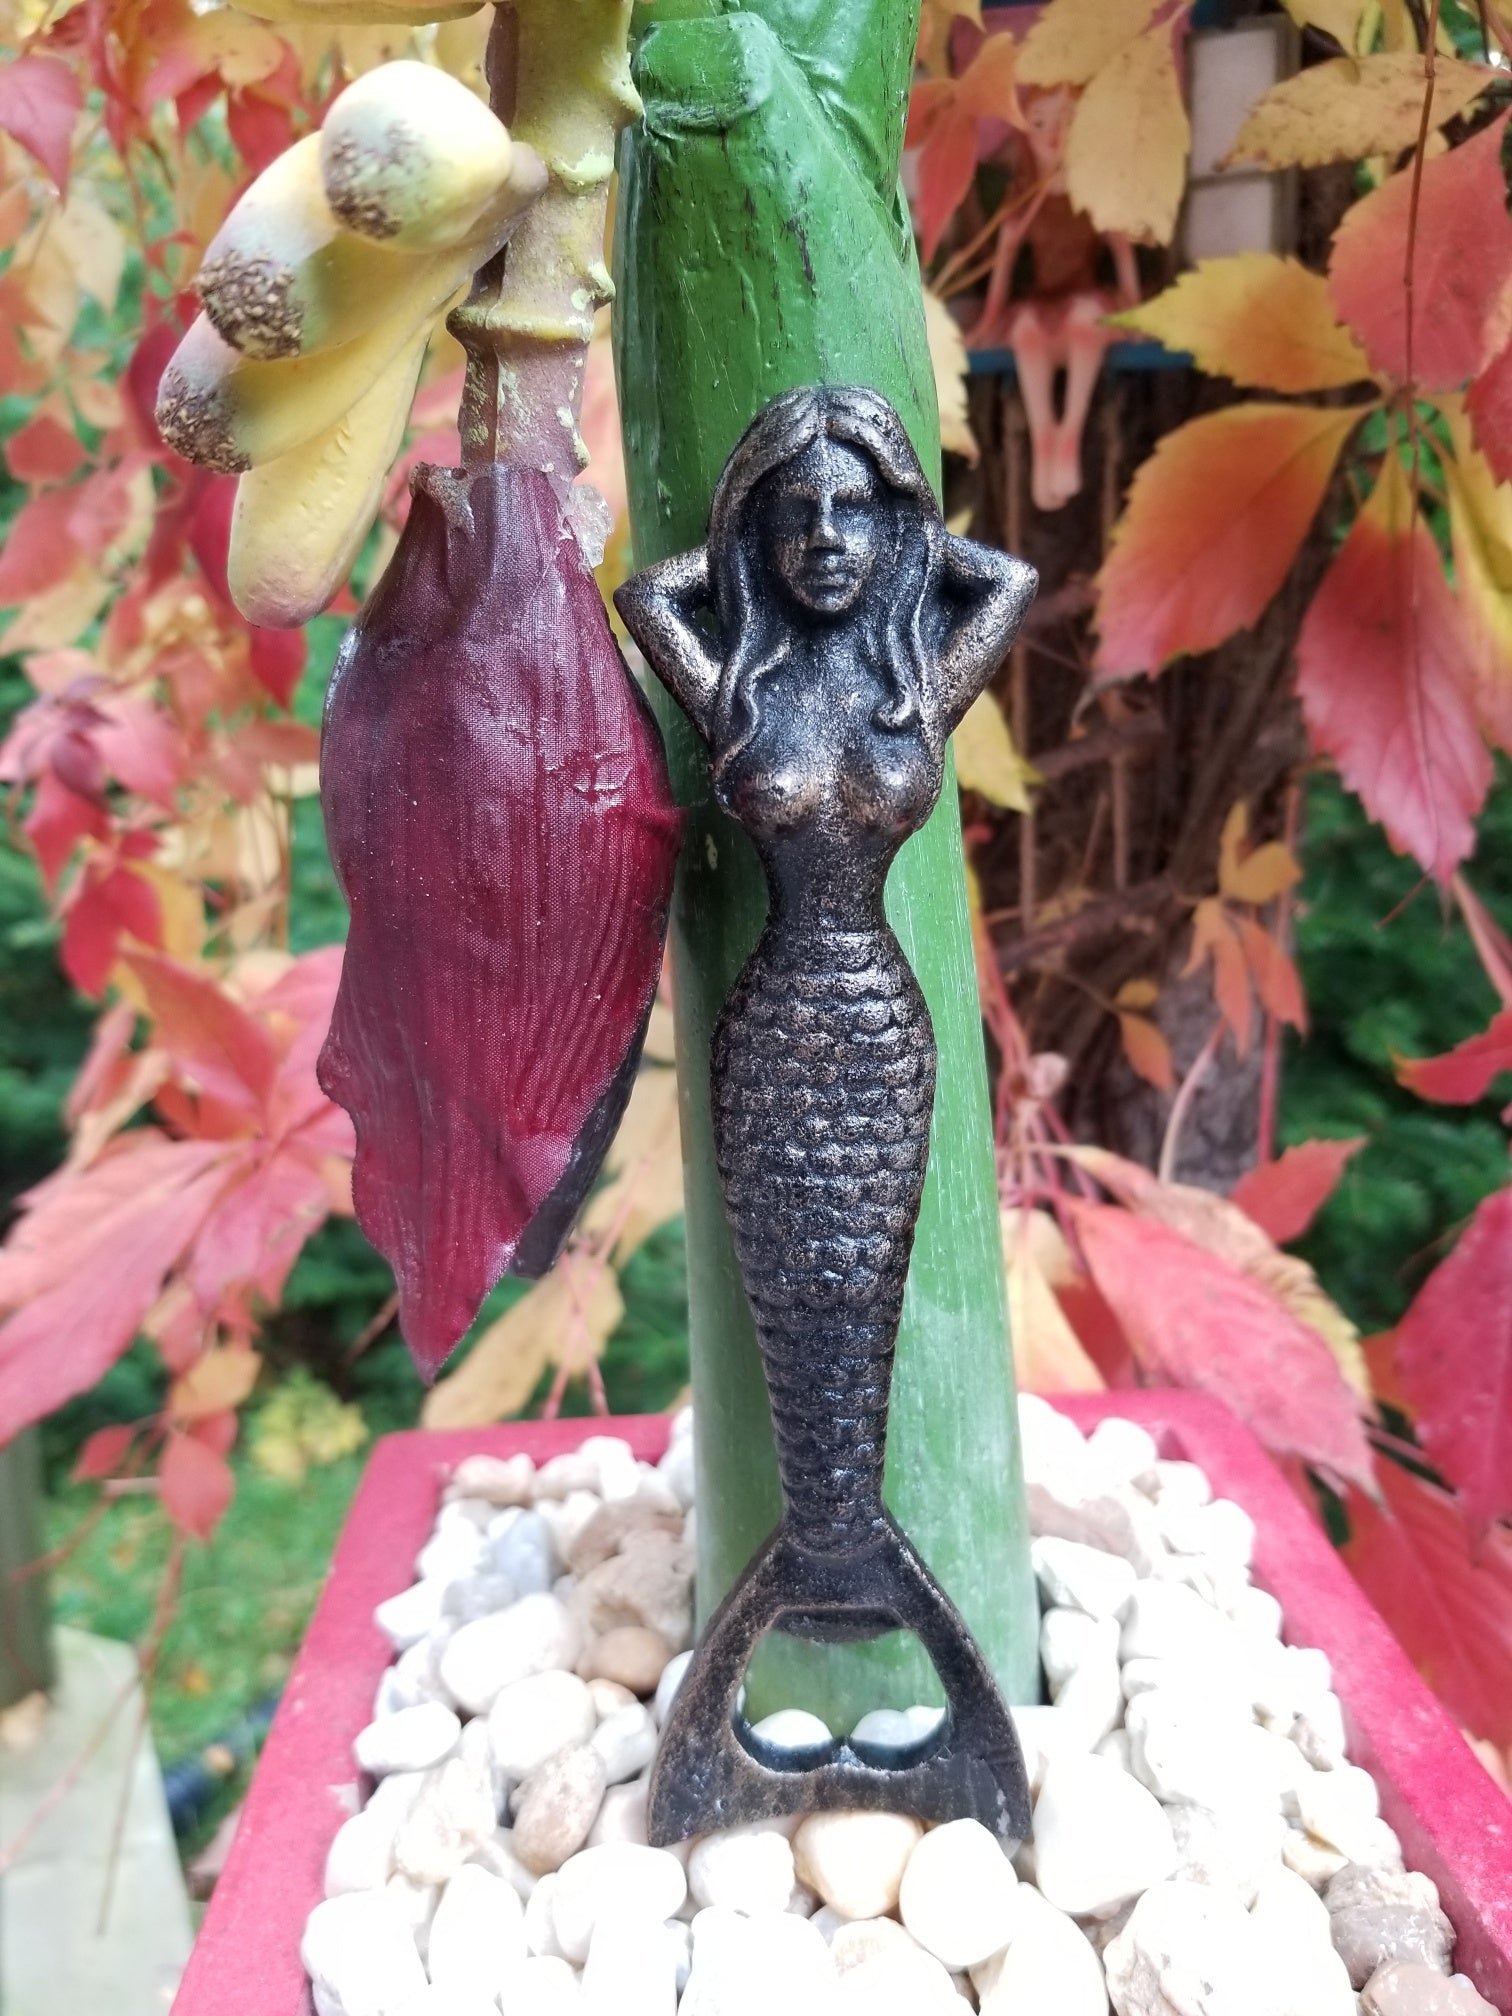 mermaid bottle opener for sale